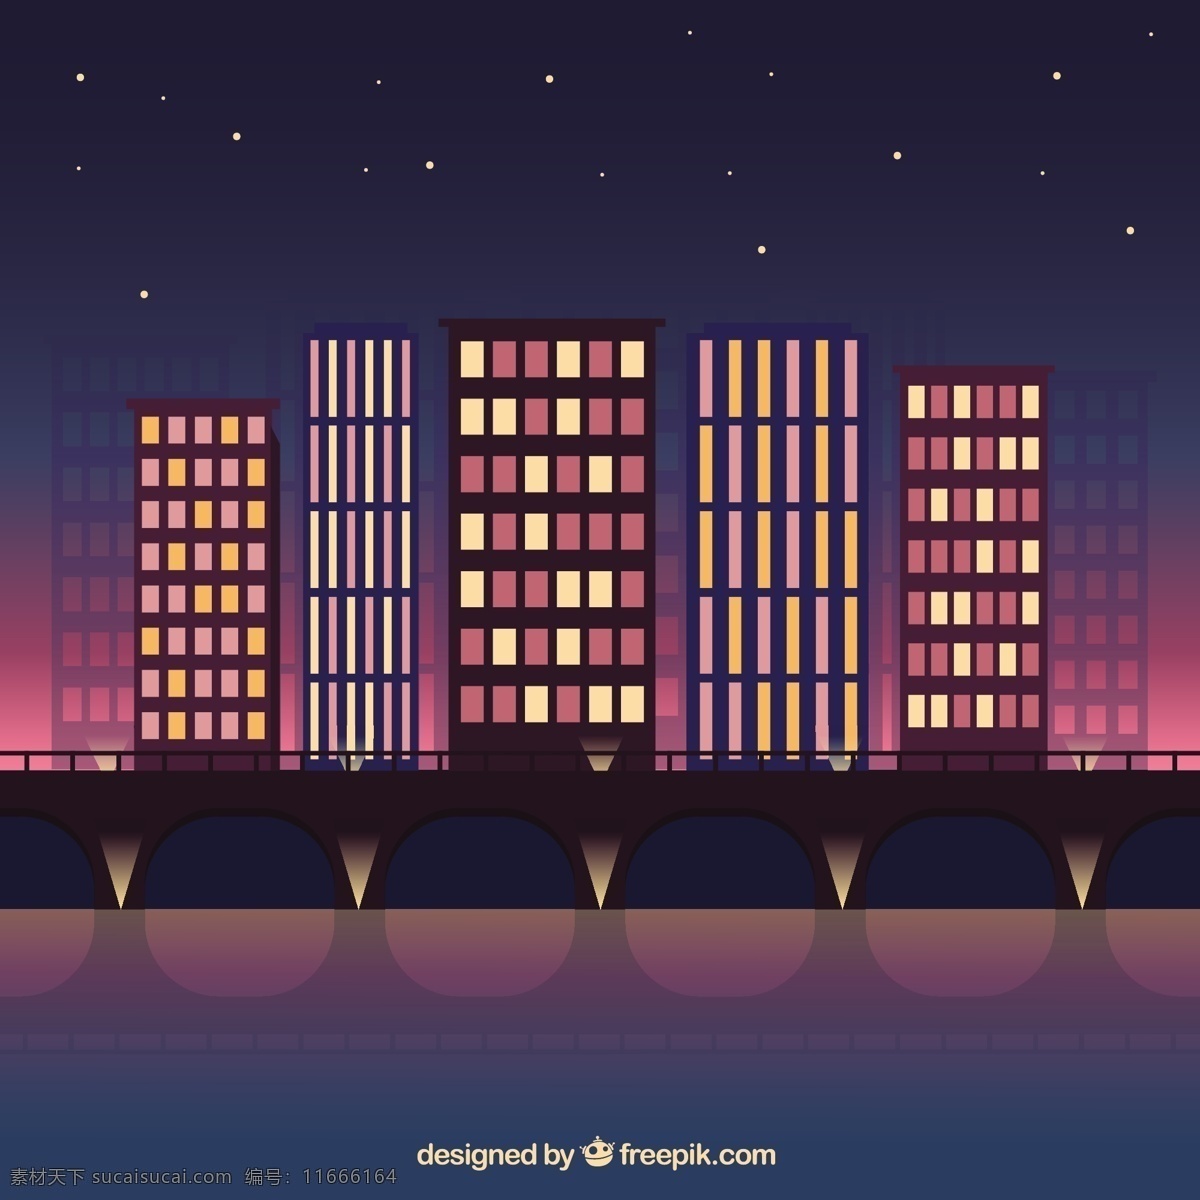 夜 现代 城市 背景 的背景下 城市设计 建筑 平 晚上 平面设计 桥梁 镇 城市景观 大 下 现代背景 摩天大楼 上升 高